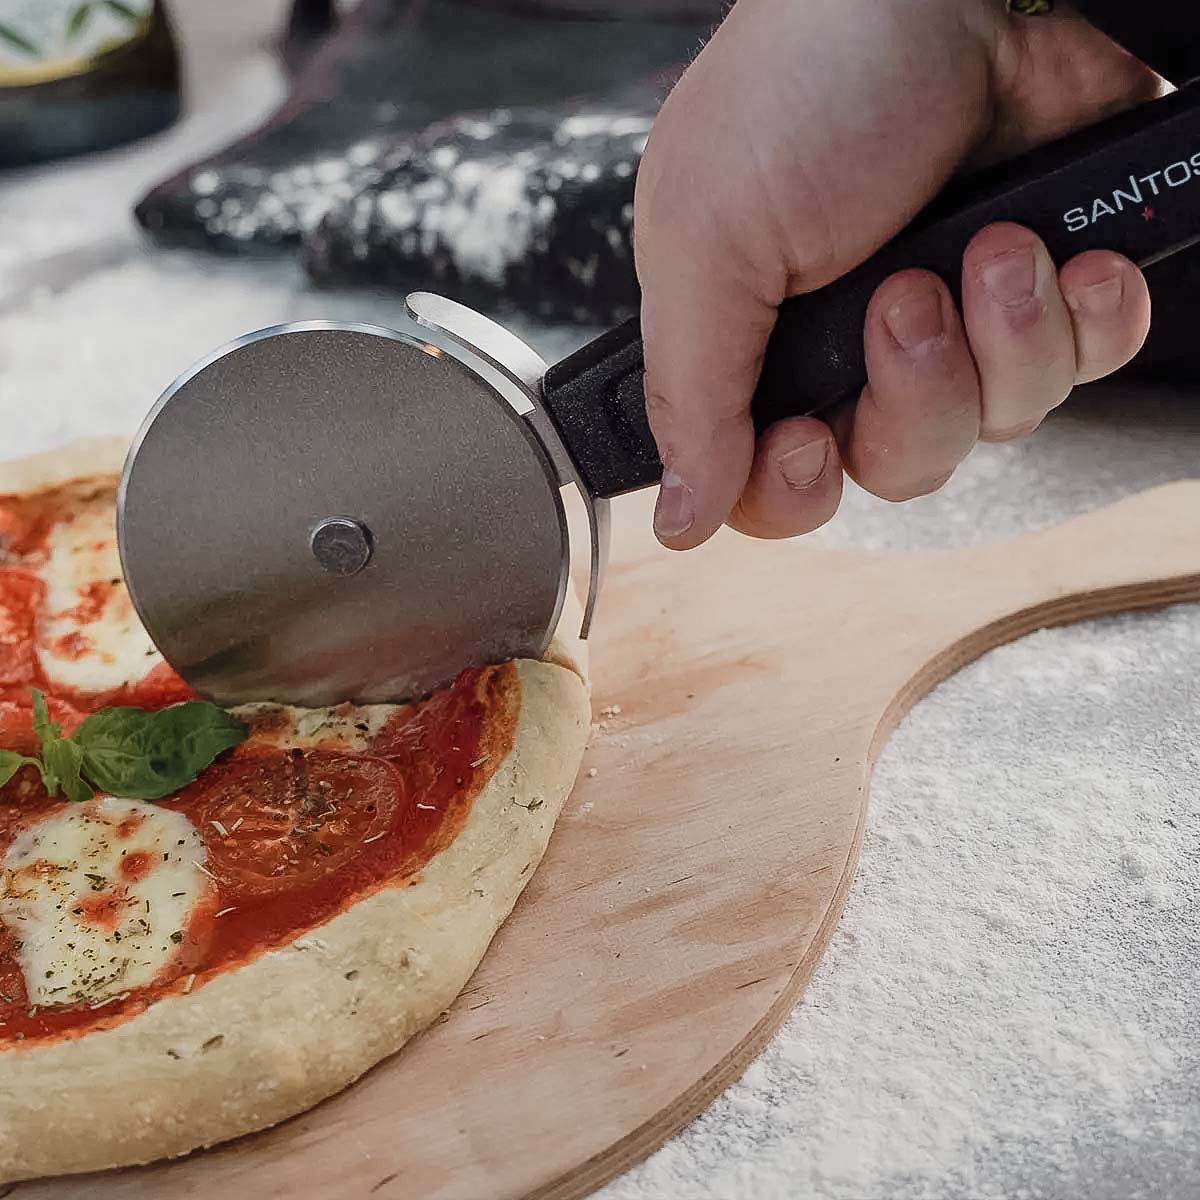 SANTOS Edelstahl Pizzaschneider - 27x2x10cm - Pizzaroller, Pizzamesser,  Pizza-Cutter - ergonomischem Griff - sicheres & verletzungsfreies schneiden